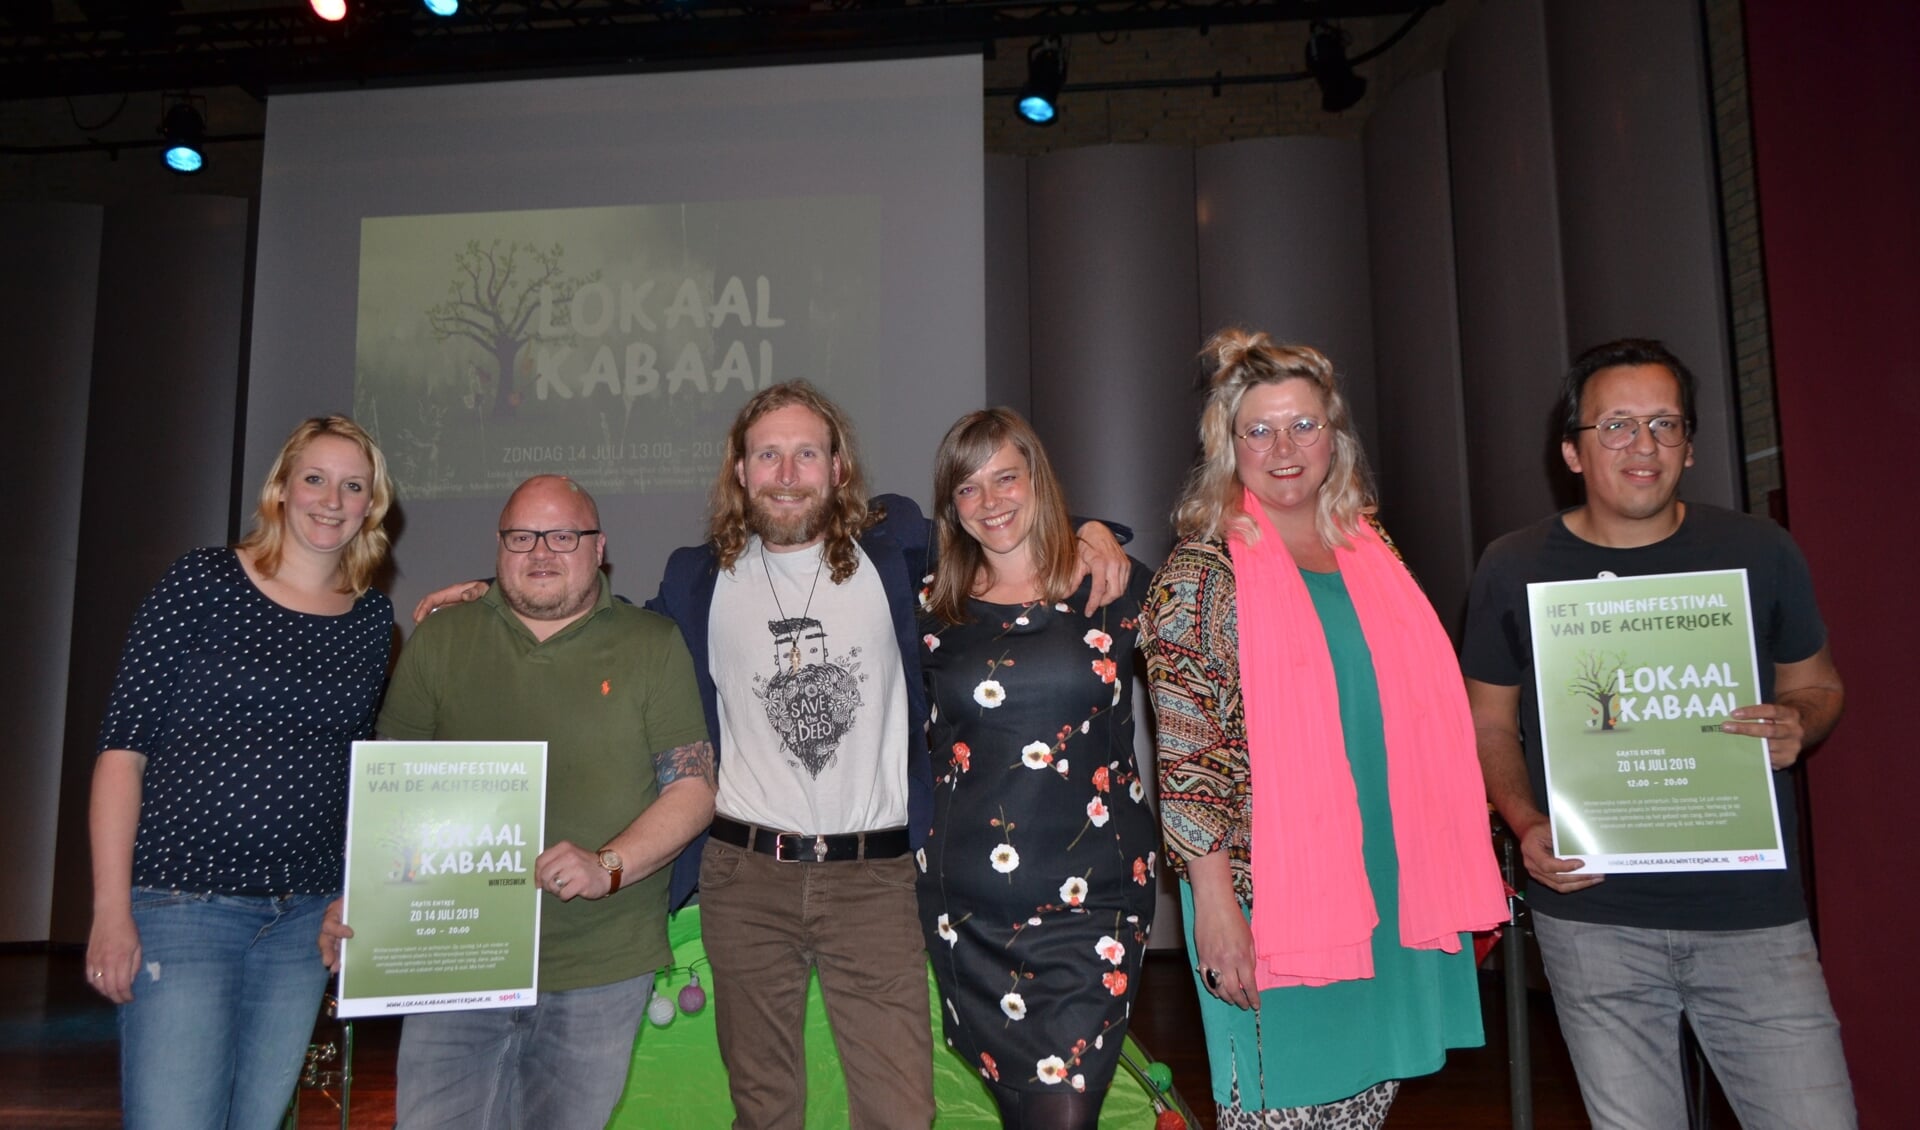 De organisatie van Lokaal Kabaal Winterswijk met geheel rechts Nicole Rouwmaat en Jeffrey Sletering. Foto: Leander Grooten